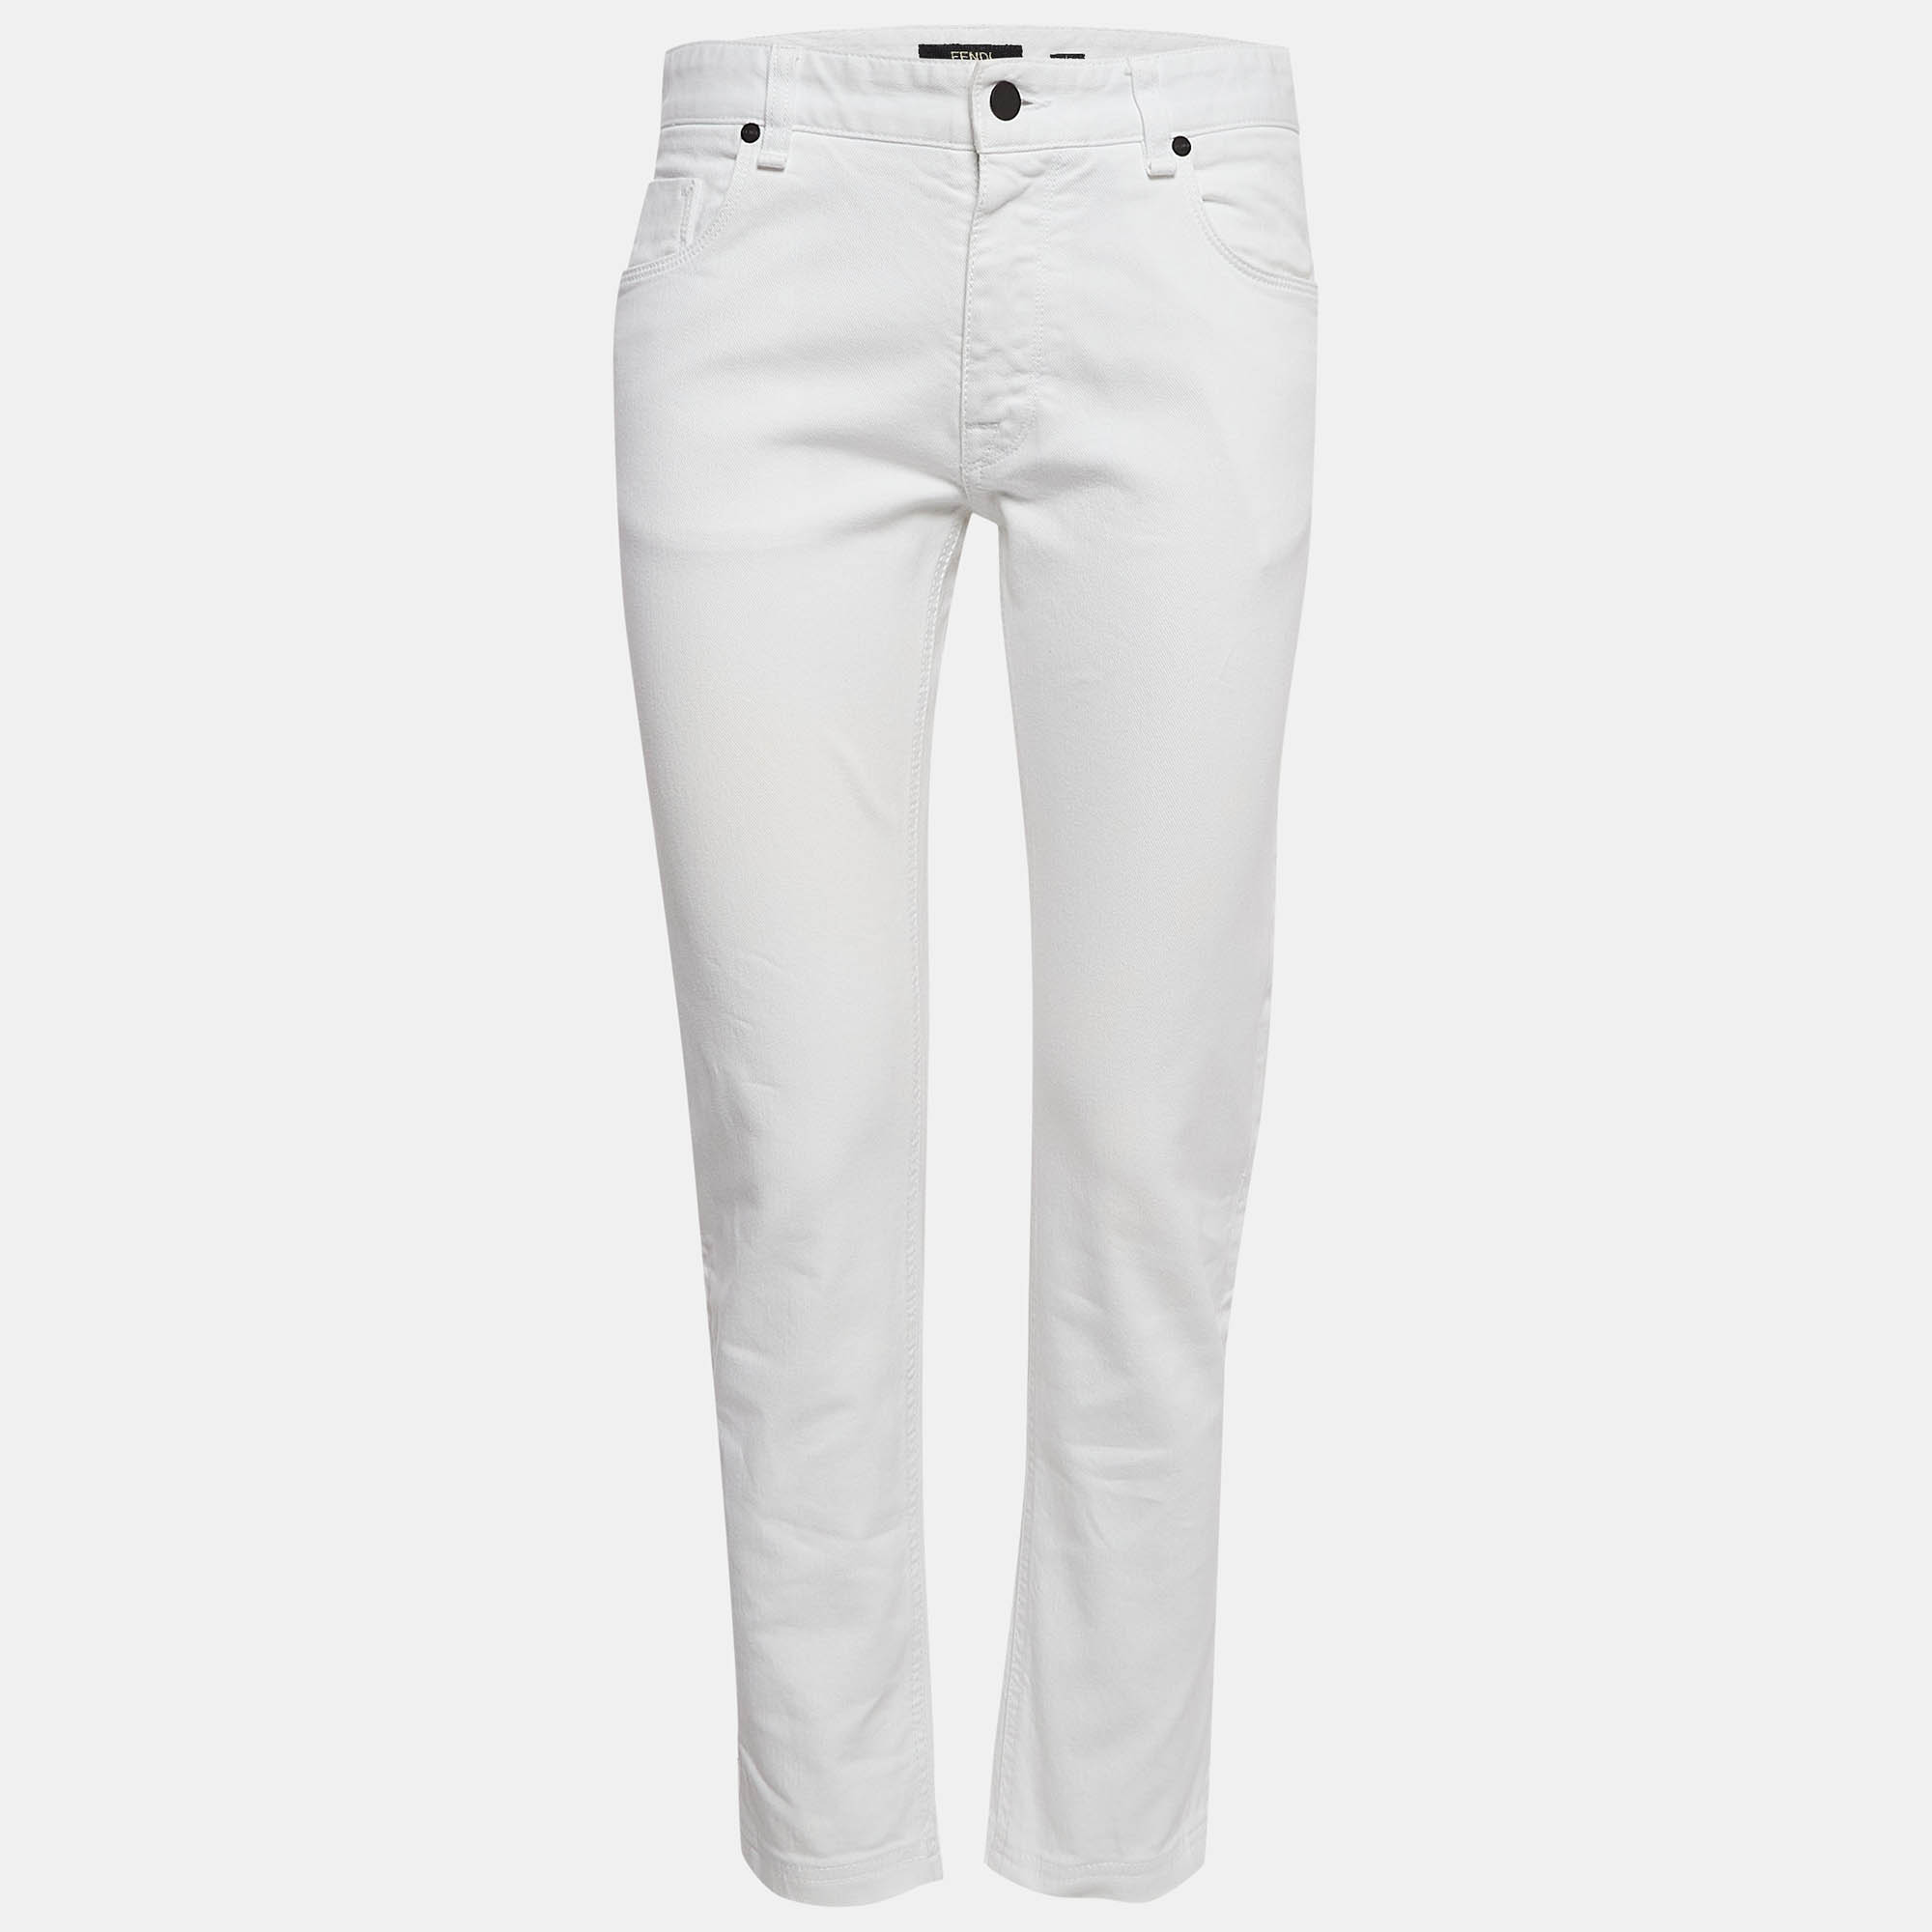 Fendi white denim logo printed jeans l waist 31"